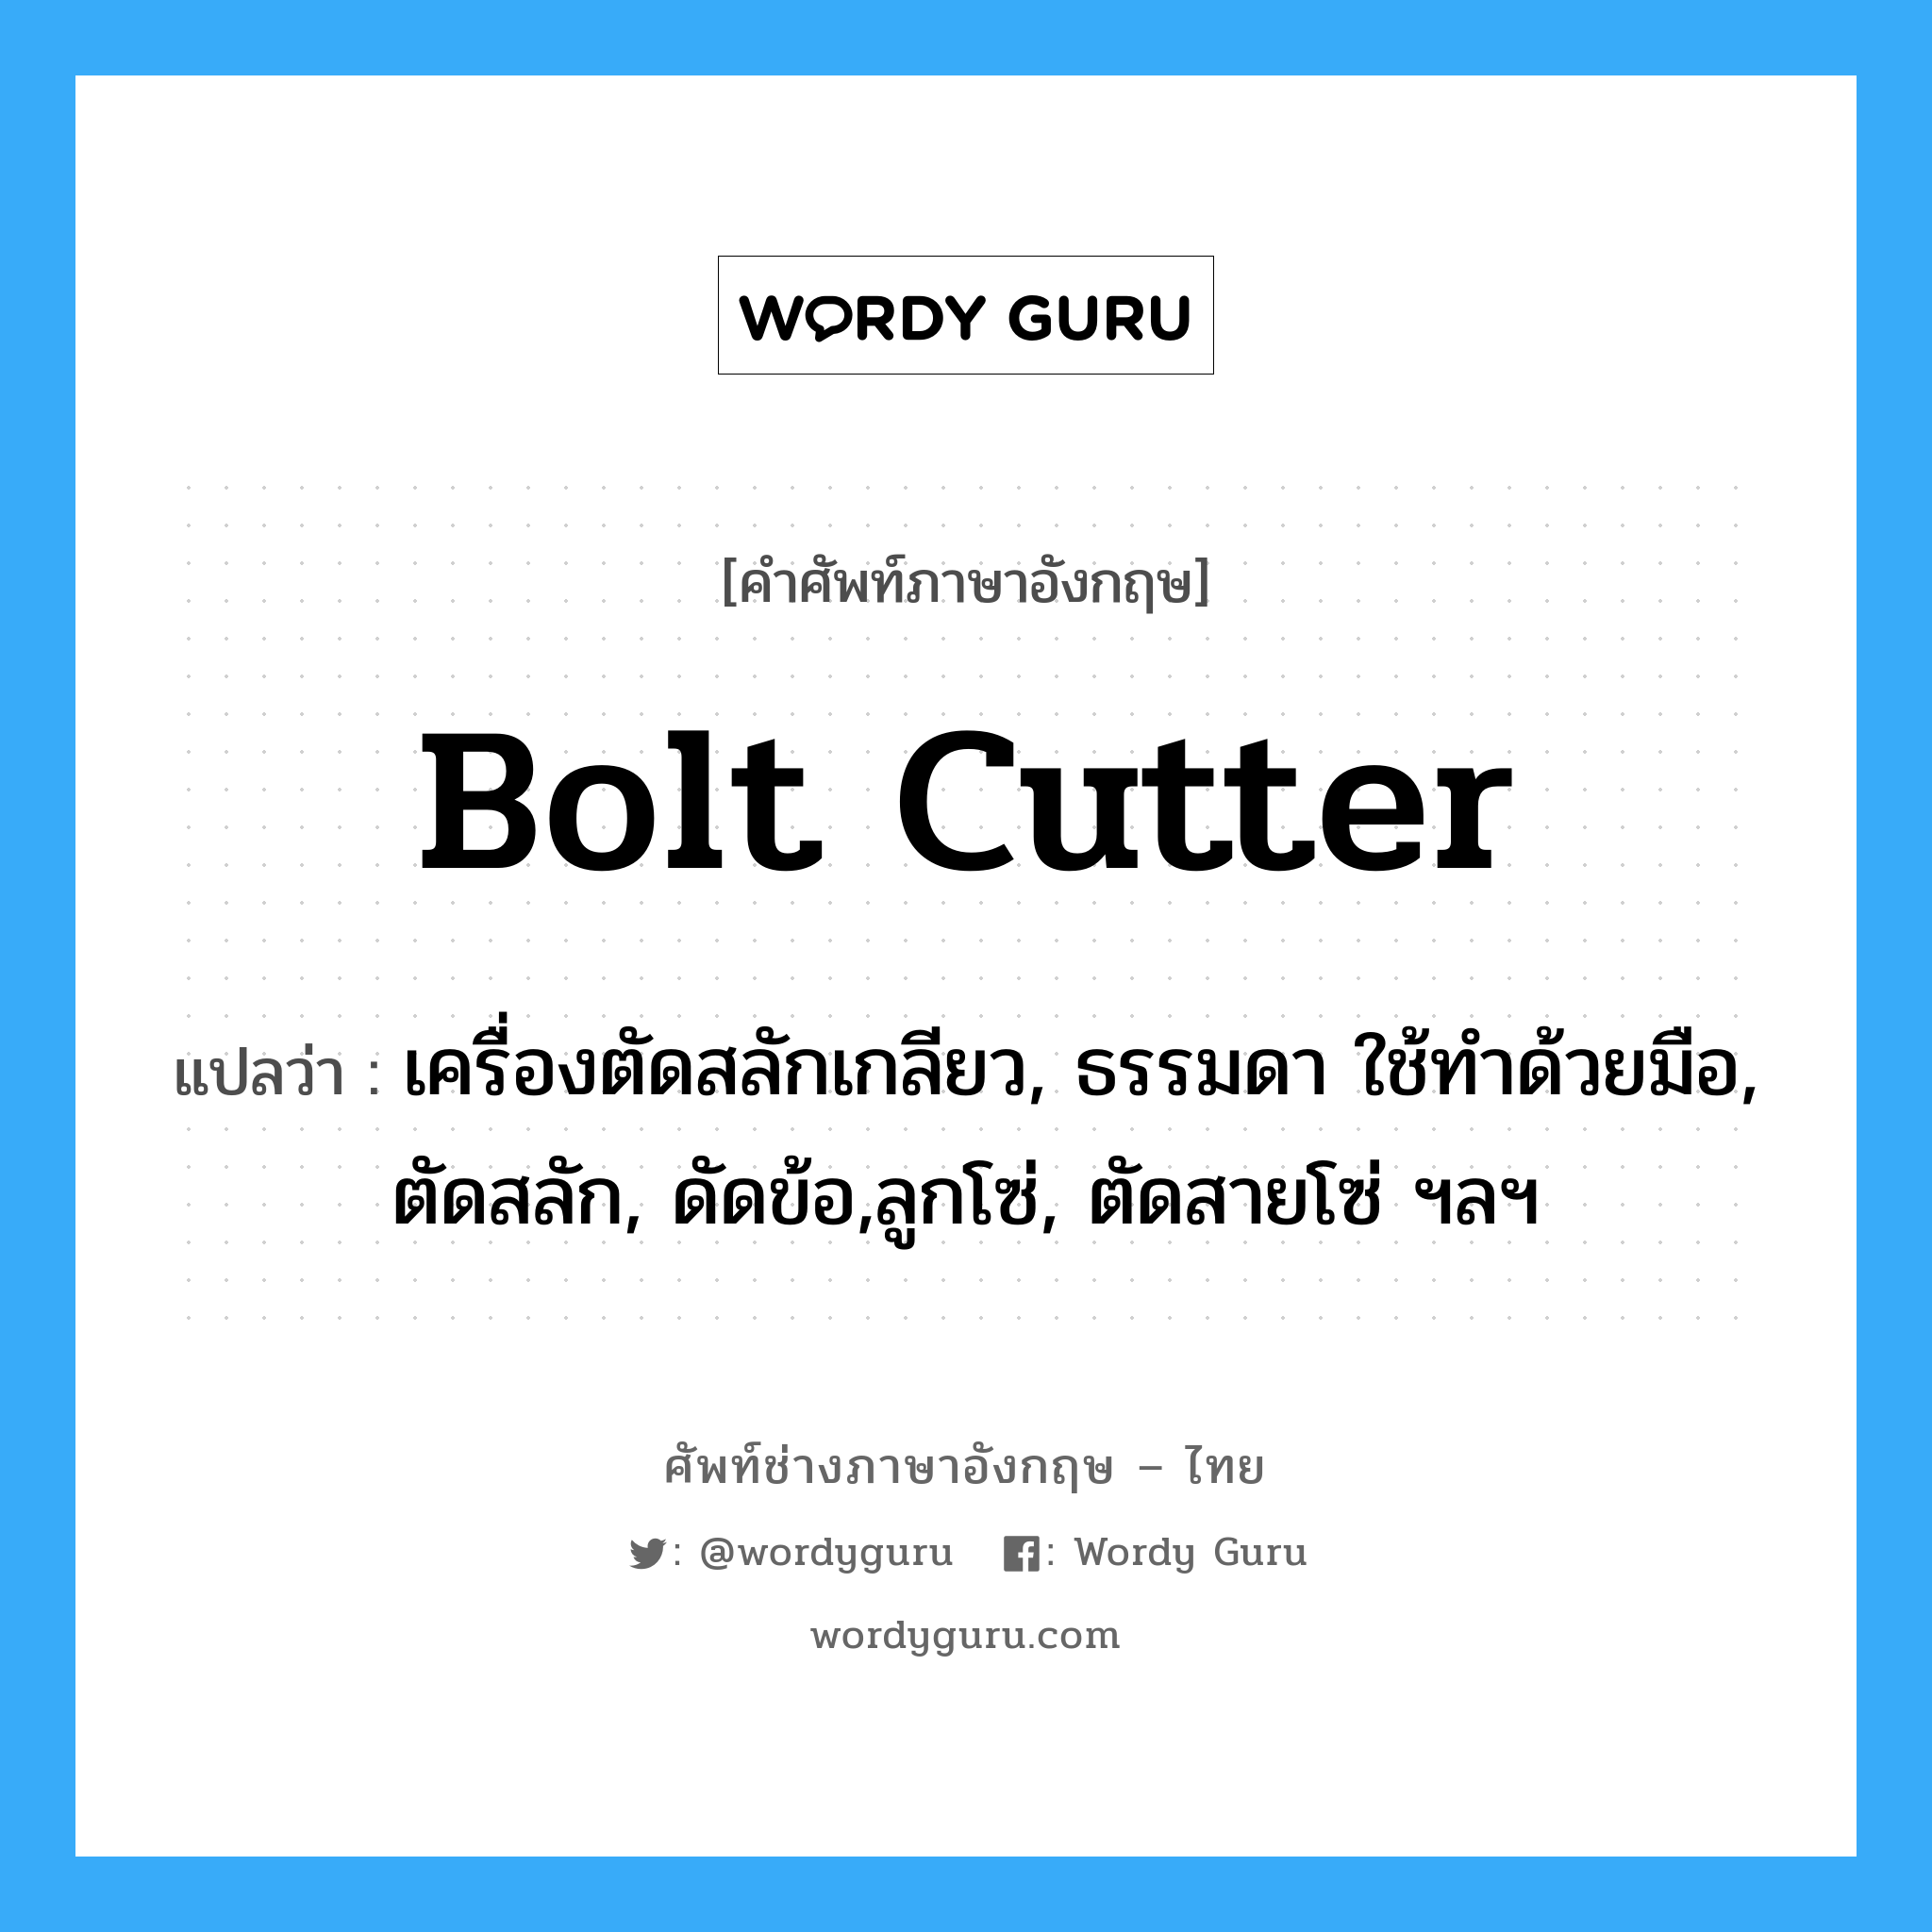 bolt cutter แปลว่า?, คำศัพท์ช่างภาษาอังกฤษ - ไทย bolt cutter คำศัพท์ภาษาอังกฤษ bolt cutter แปลว่า เครื่องตัดสลักเกลียว, ธรรมดา ใช้ทำด้วยมือ, ตัดสลัก, ดัดข้อ,ลูกโซ่, ตัดสายโซ่ ฯลฯ